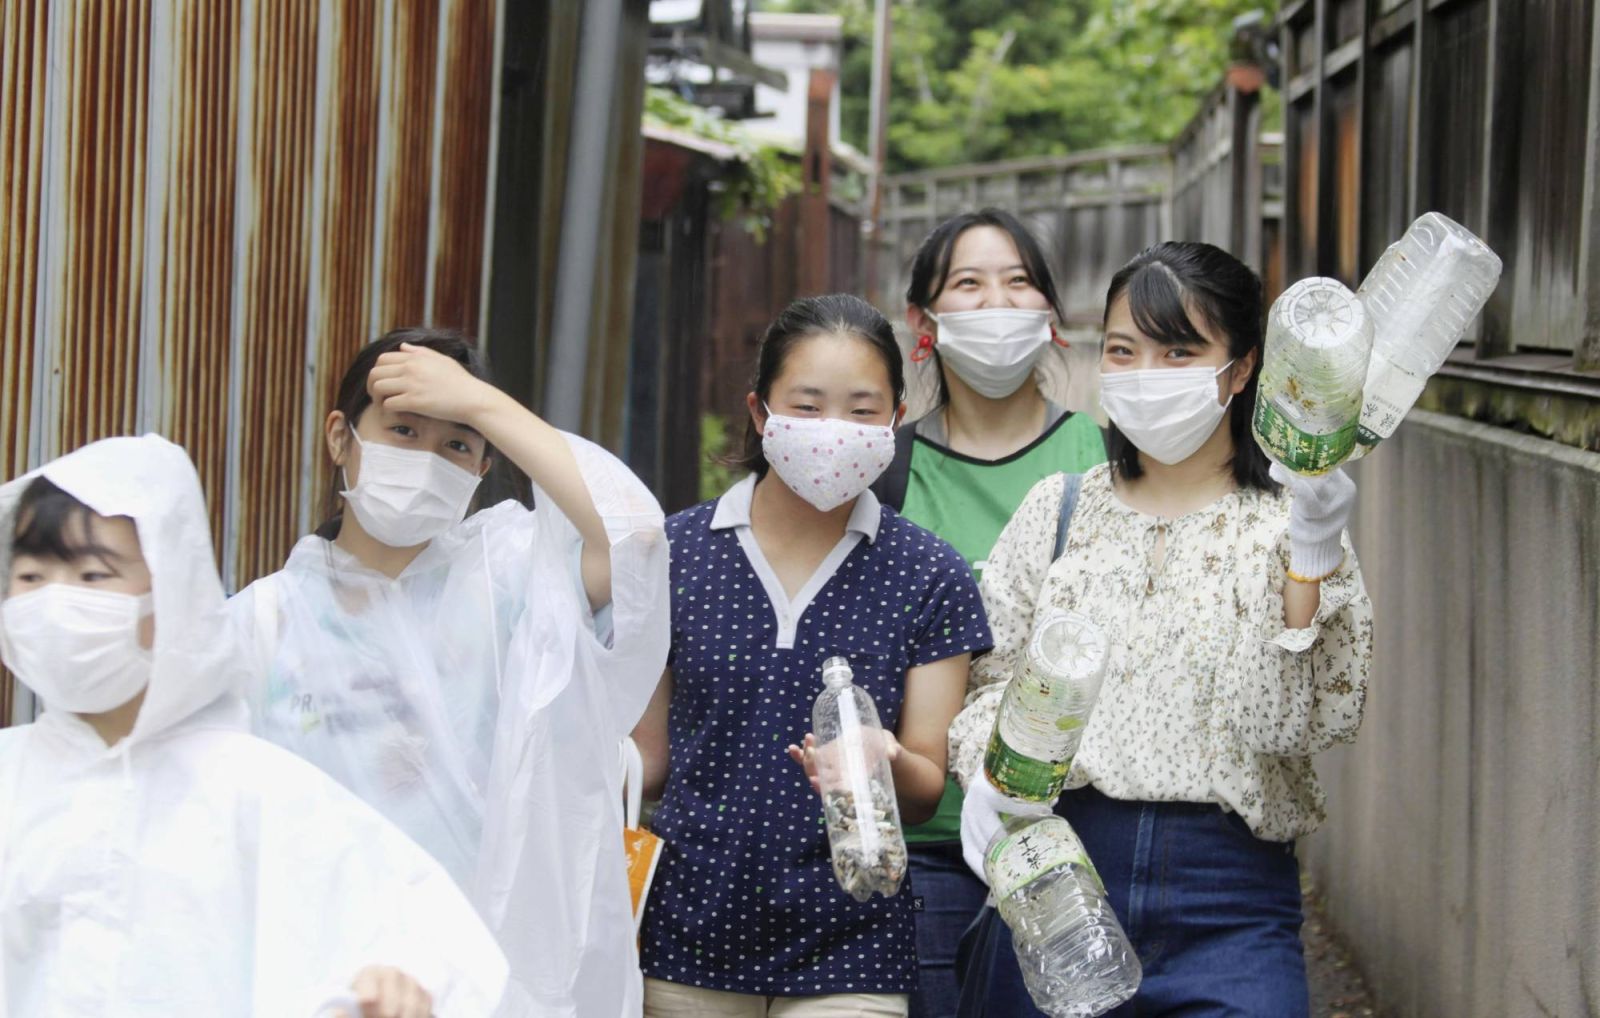 Thùng rác của một người là kho báu của người khác: Sinh viên Nhật Bản biến việc dọn rác thành trò chơi